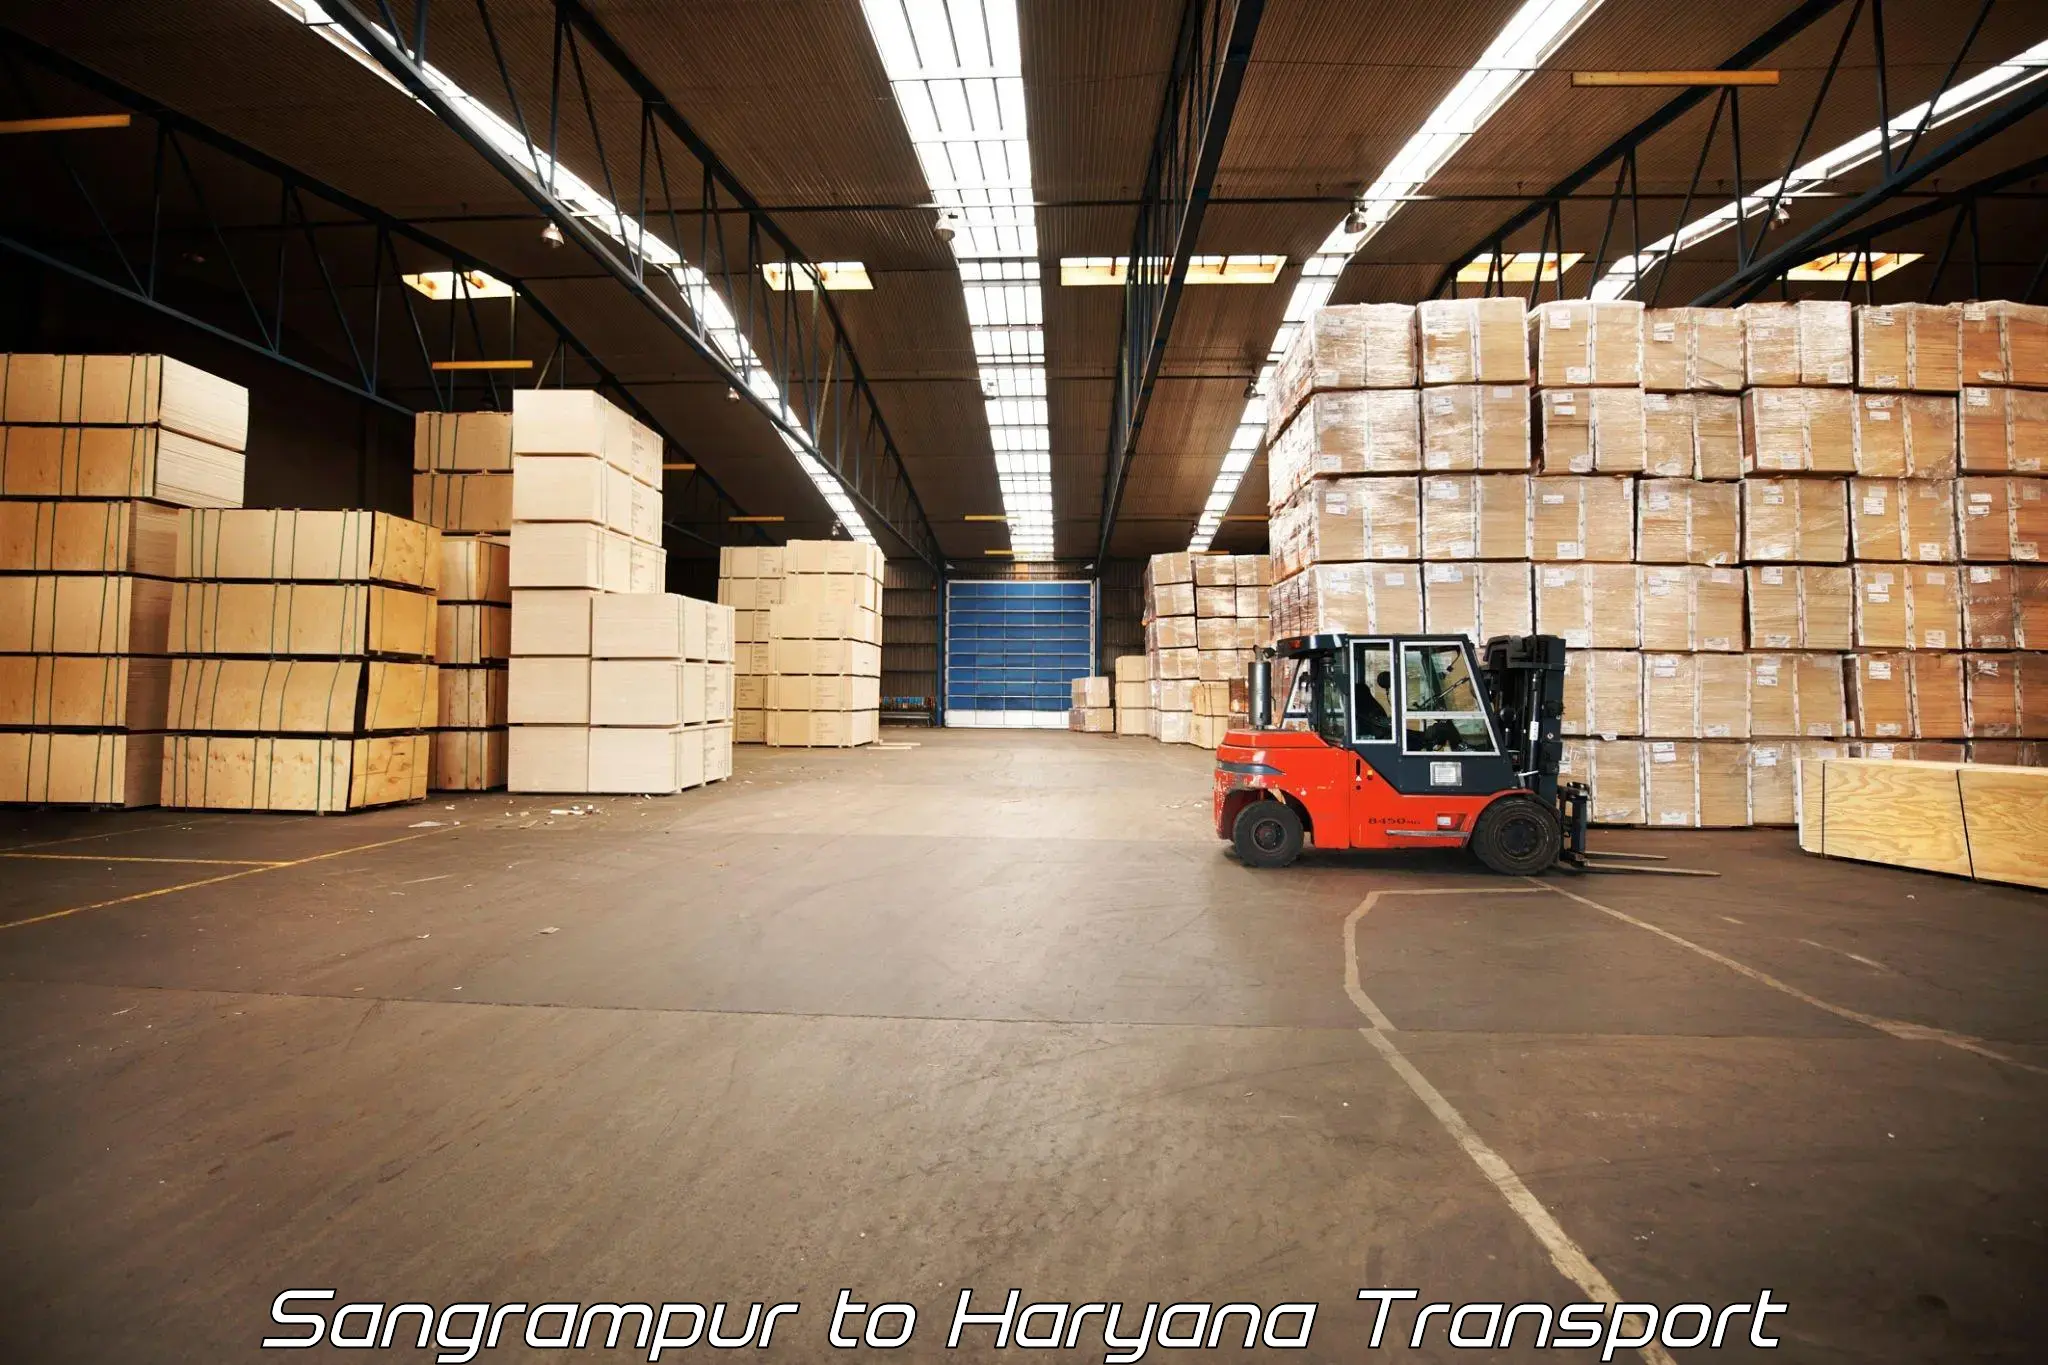 Pick up transport service Sangrampur to Haryana